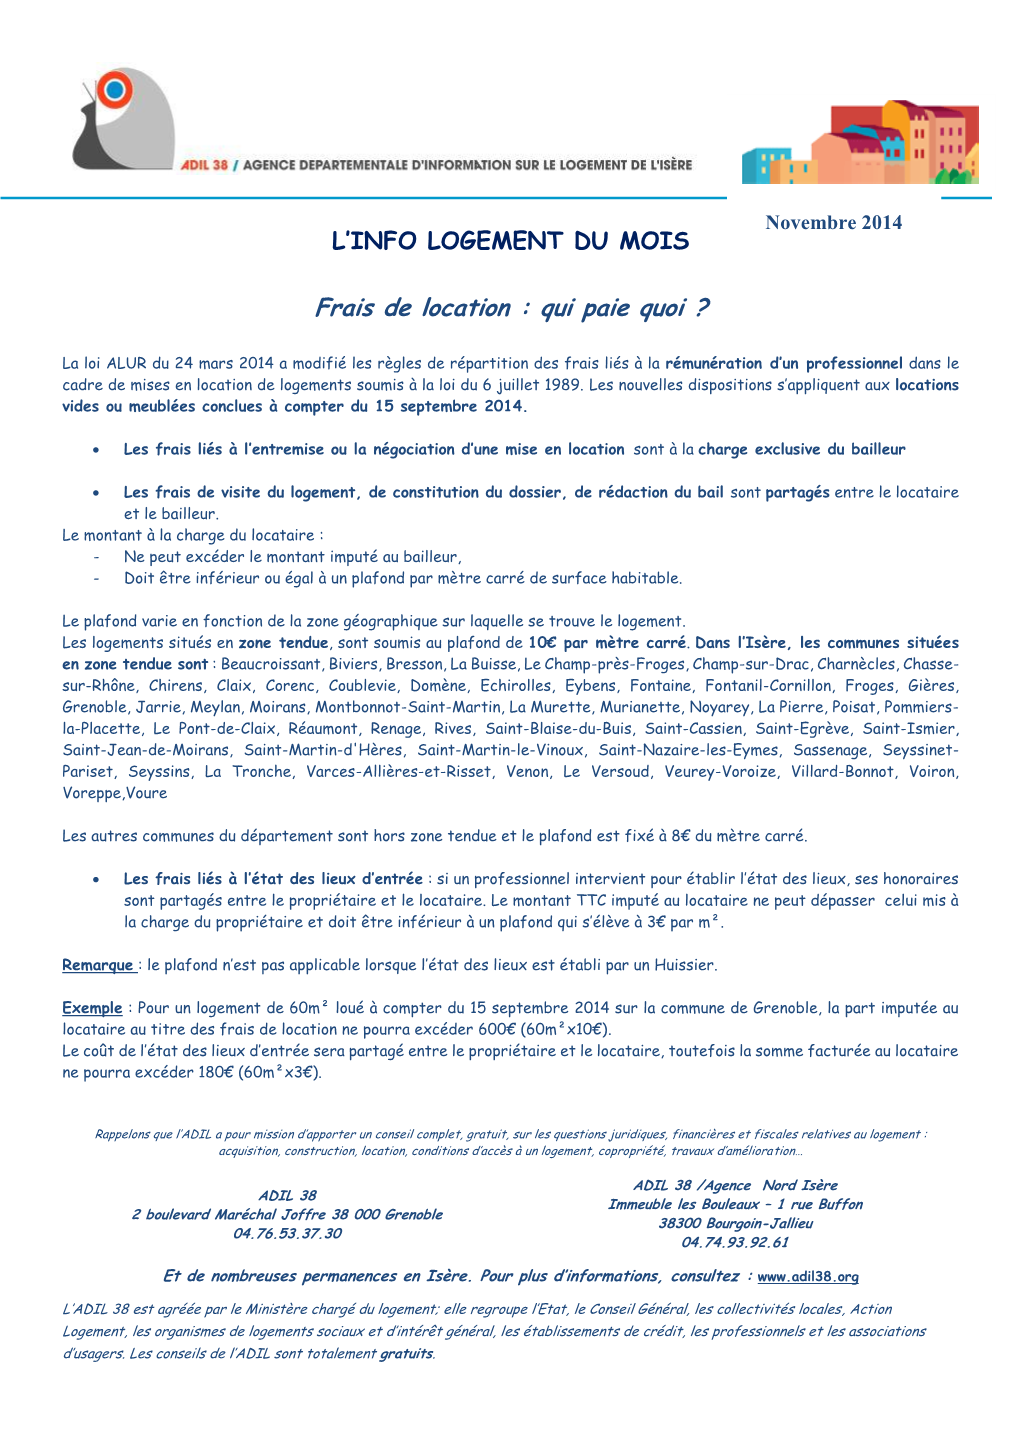 Info Logement ADIL 38 De Novembre 2014 Relative Aux Frais De Location